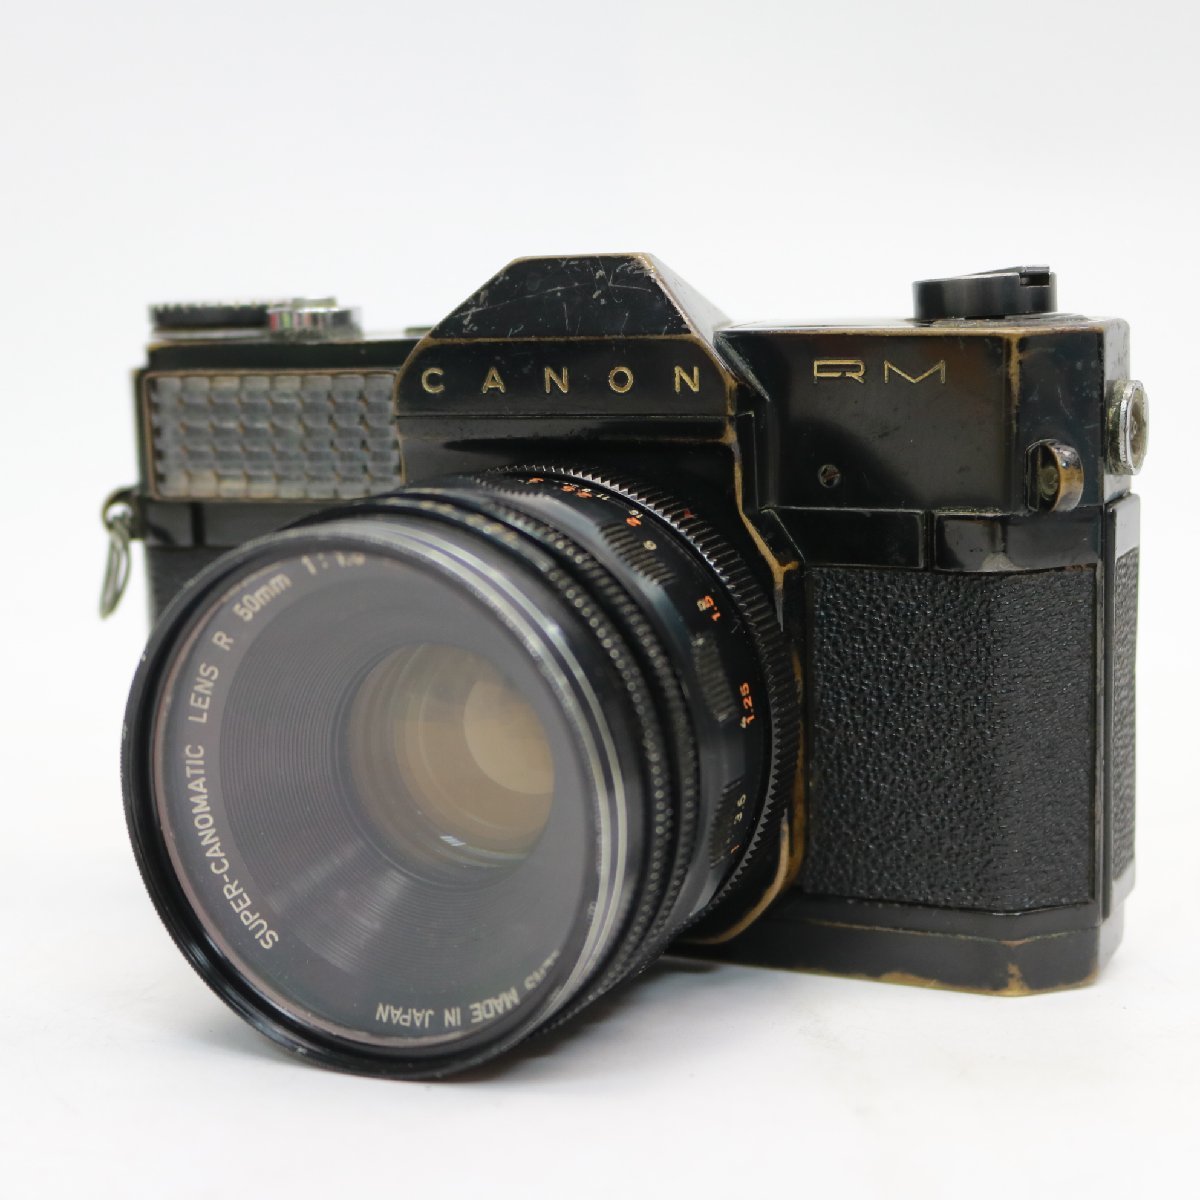 東京都杉並区にて キヤノンフレックス カメラ SUPER-CANOMATIC LENS R 50mm F1.8  を出張買取させて頂きました。